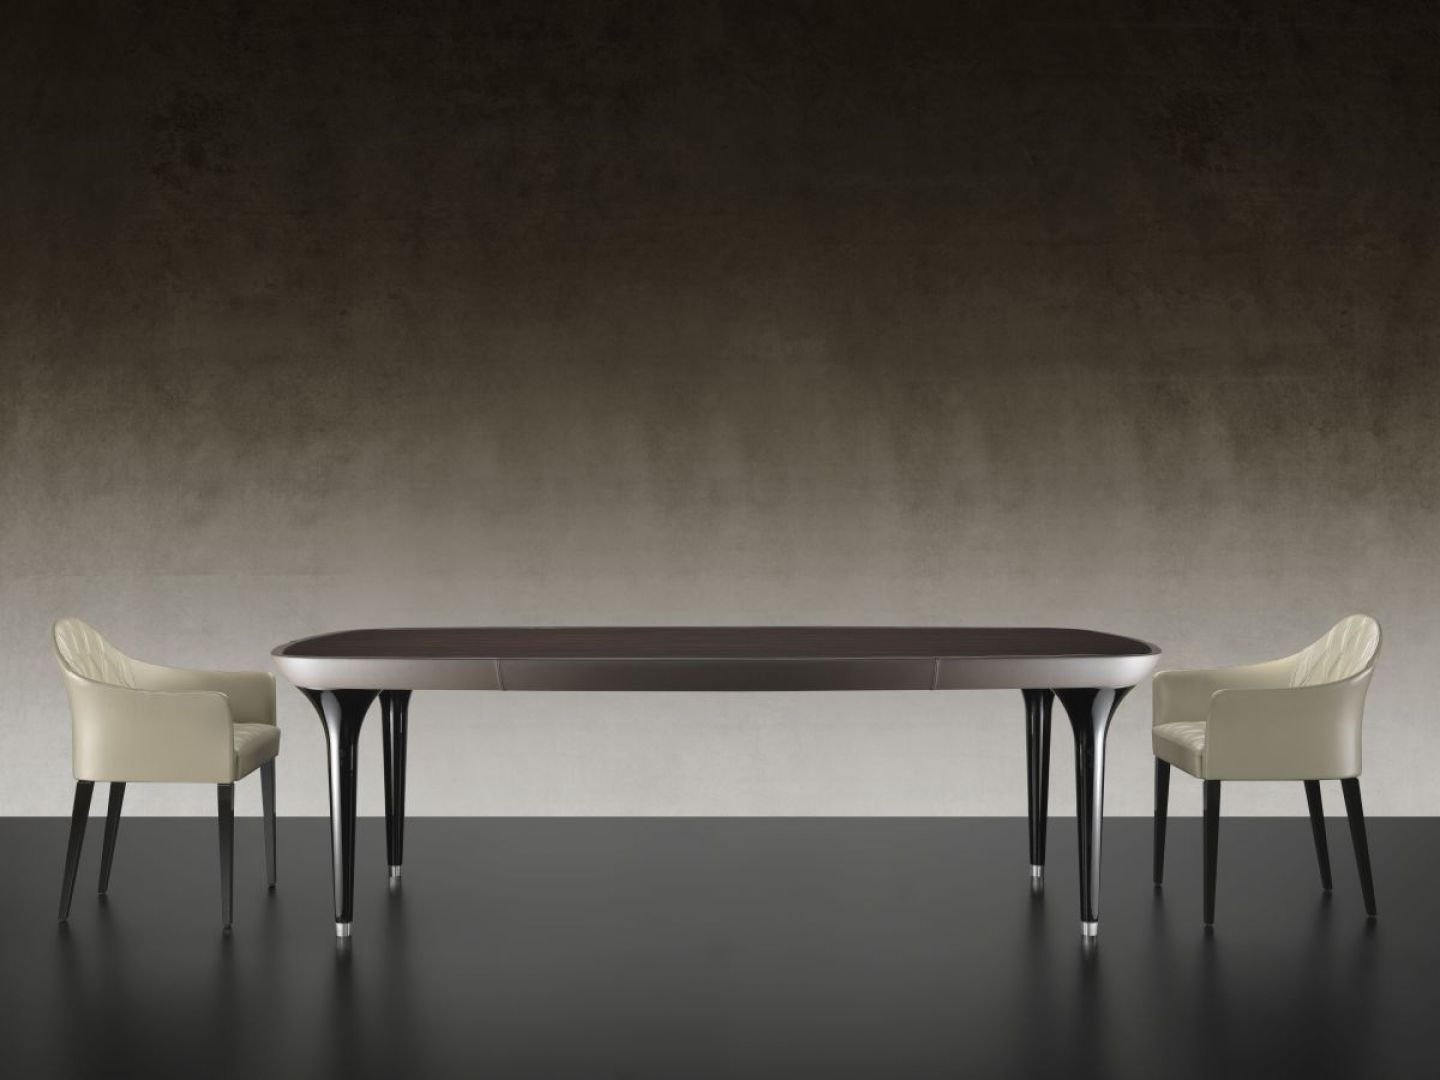 Wykonane ze szkła Murano i zakończone błyszczącymi metalowymi stopkami nogi stołu Ark 72 marki Reflex do złudzenia przypominają obcasy damskich szpilek. Fot. Heban